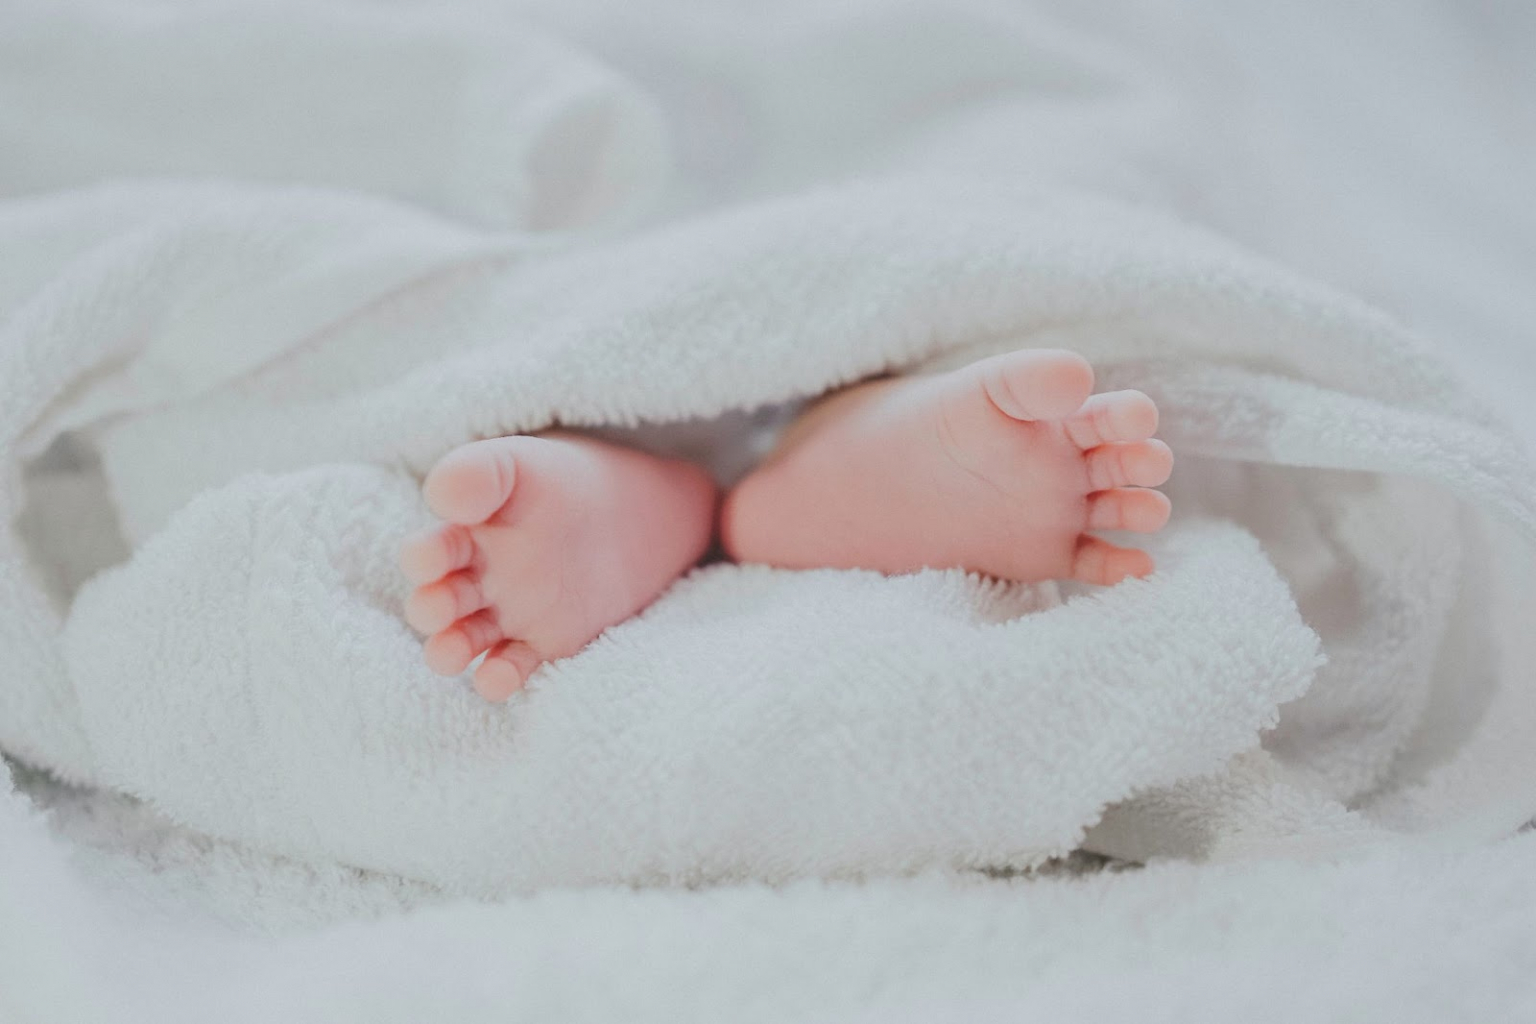 kisbaba két lába takaró alatt